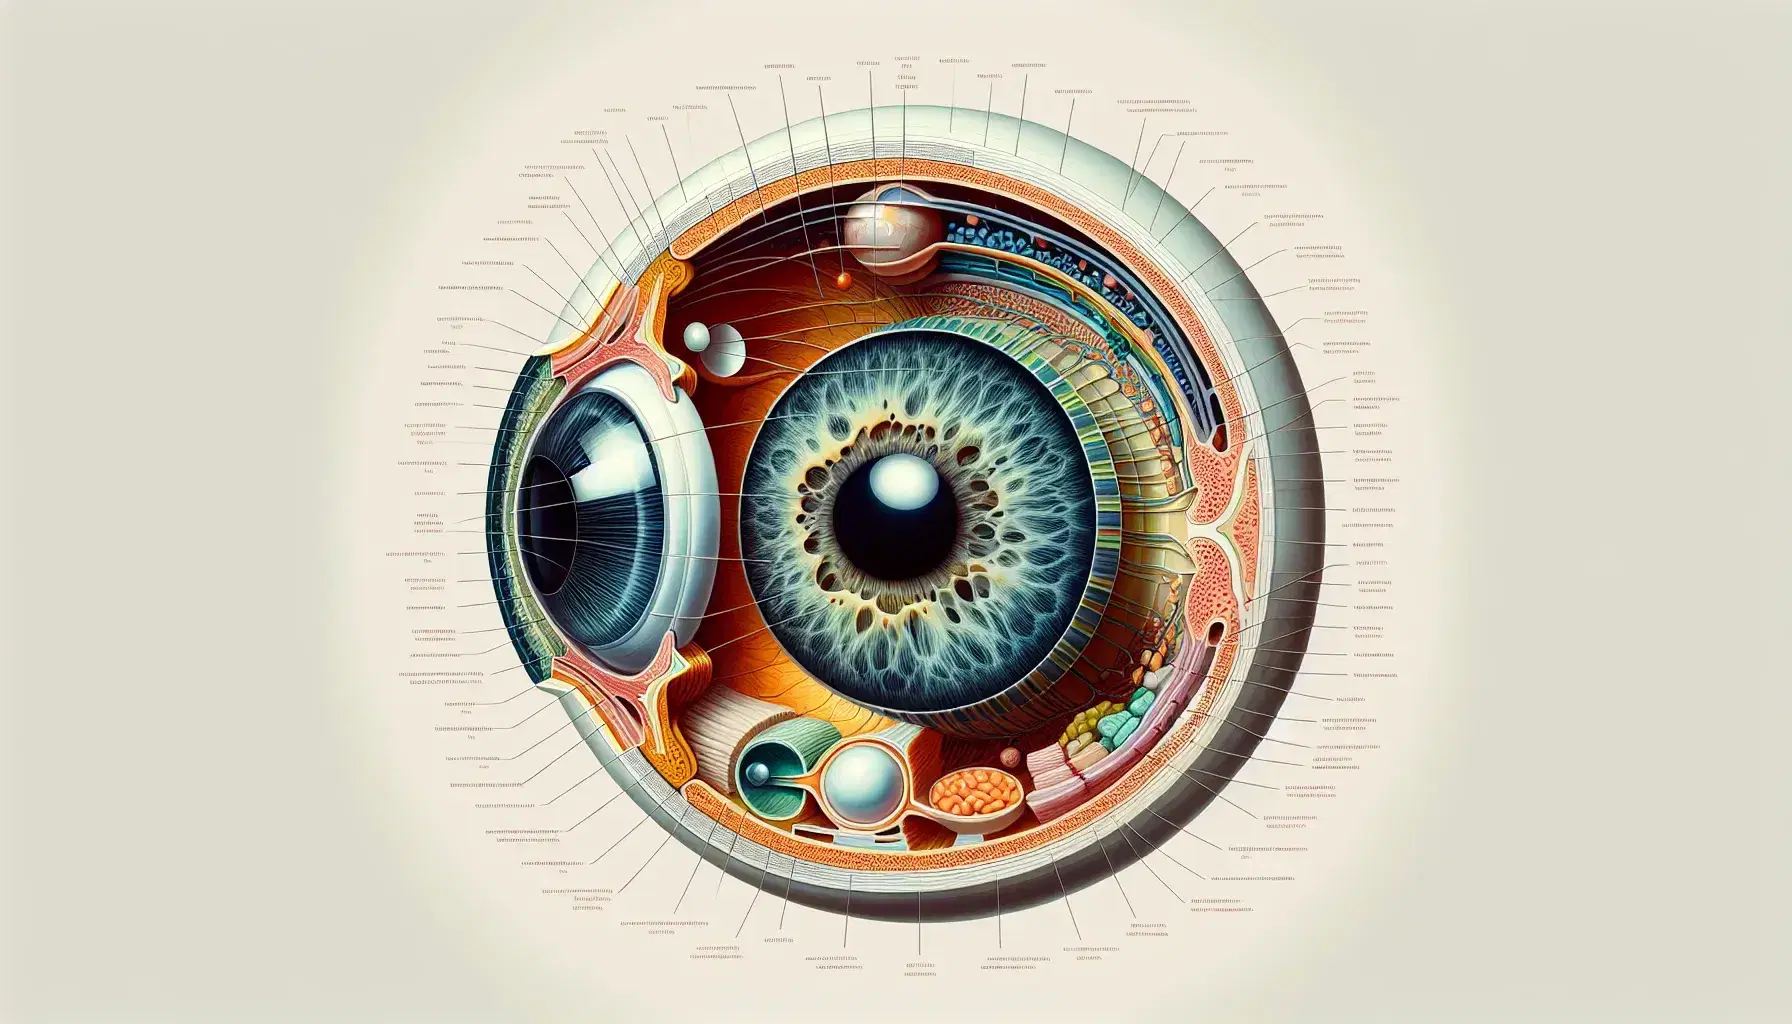 Vista transversal detallada del ojo humano mostrando la esclerótica, córnea, humor acuoso, iris, pupila, lente, humor vítreo, retina y nervio óptico.